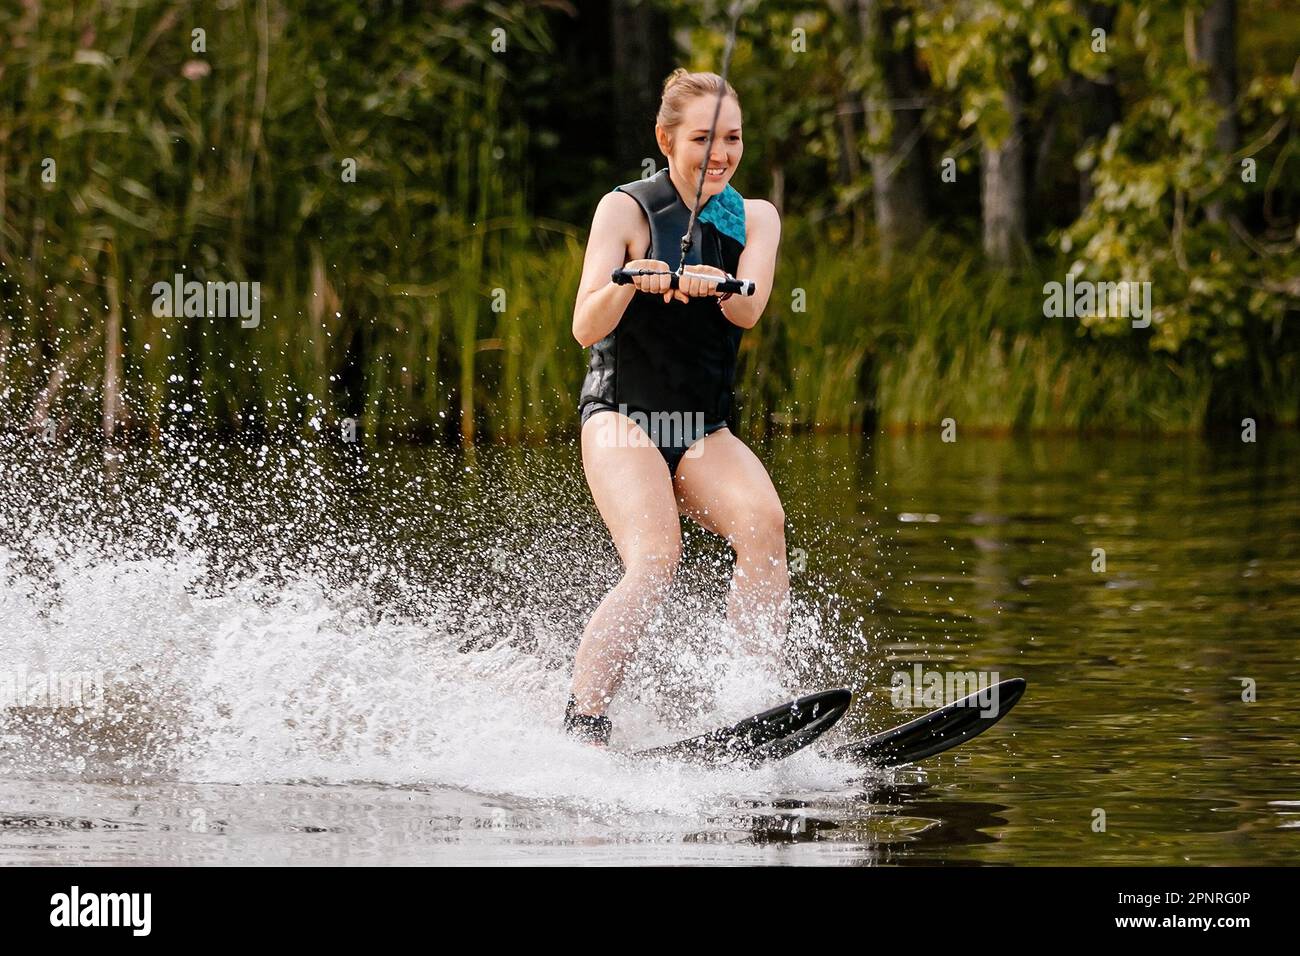 Wunderschöne junge Frau, die hinter einem Motorboot auf dem See Wasserski fährt, extreme Wassersportarten, Sommerurlaub Stockfoto